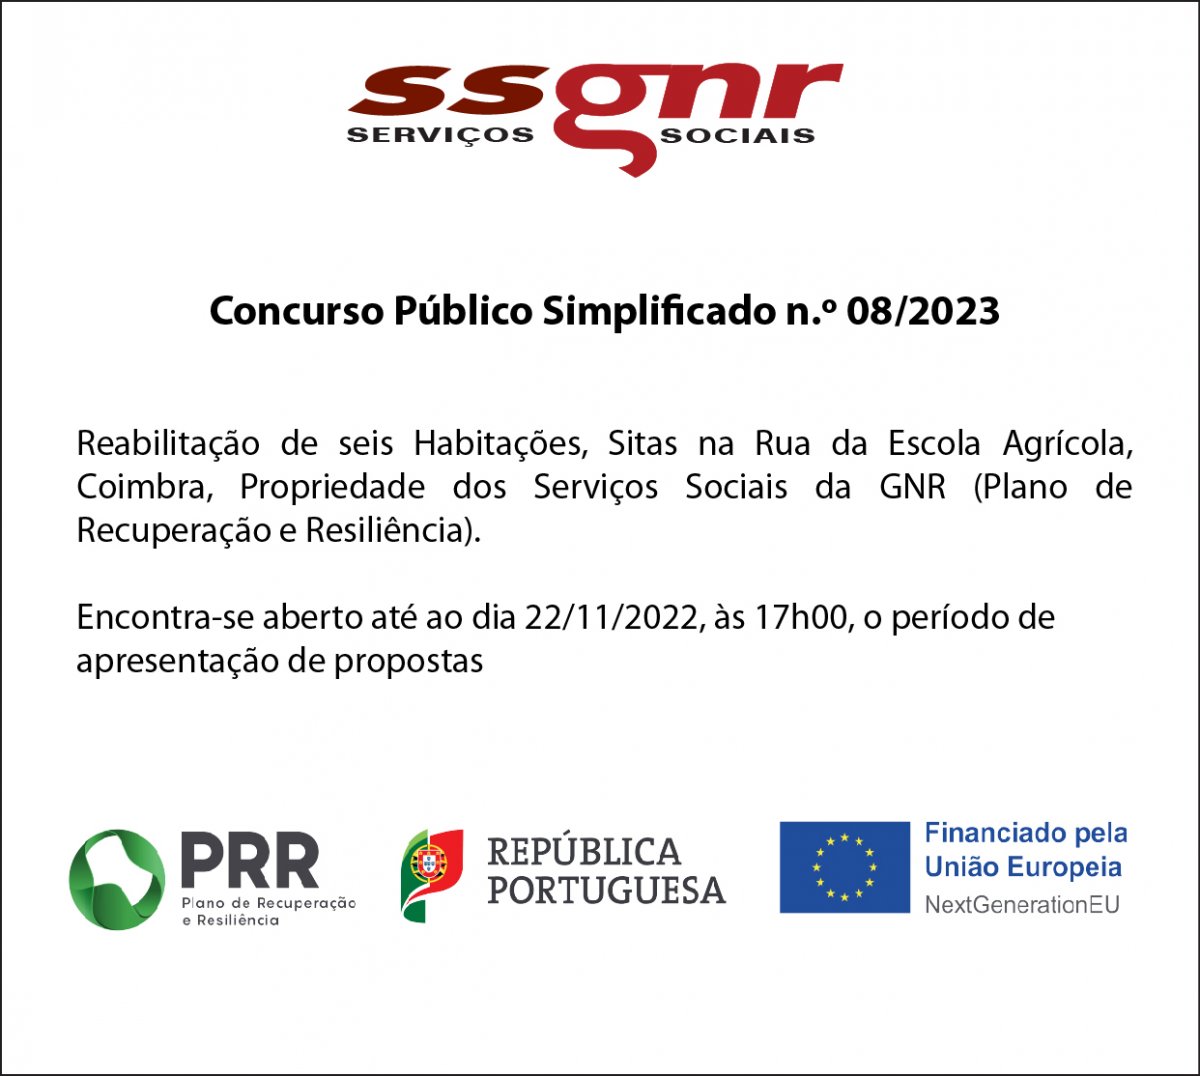 Concurso Público Simplificado n.º 08/2023 